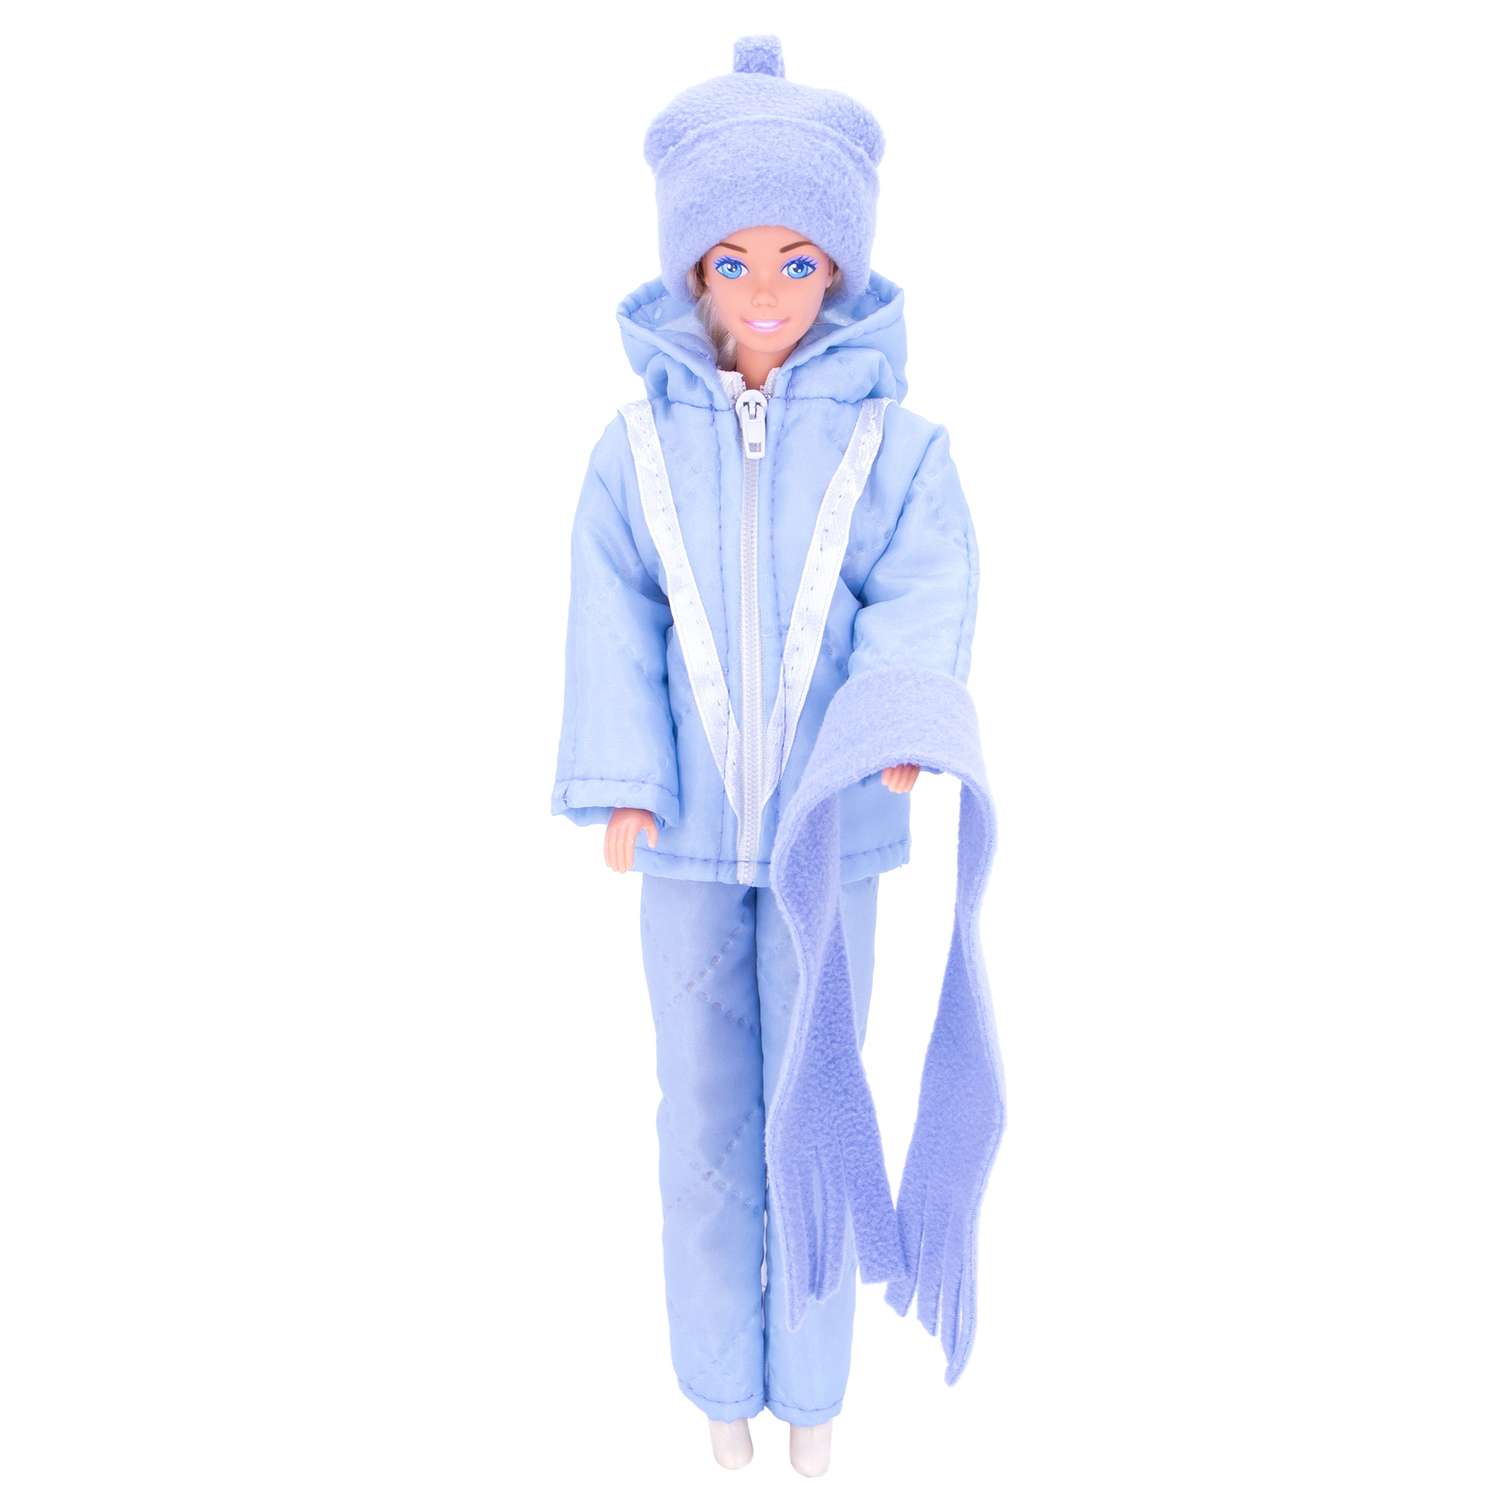 Комплект одежды Модница для куклы 29 см из синтепона 1404 голубой 1404голубой - фото 1